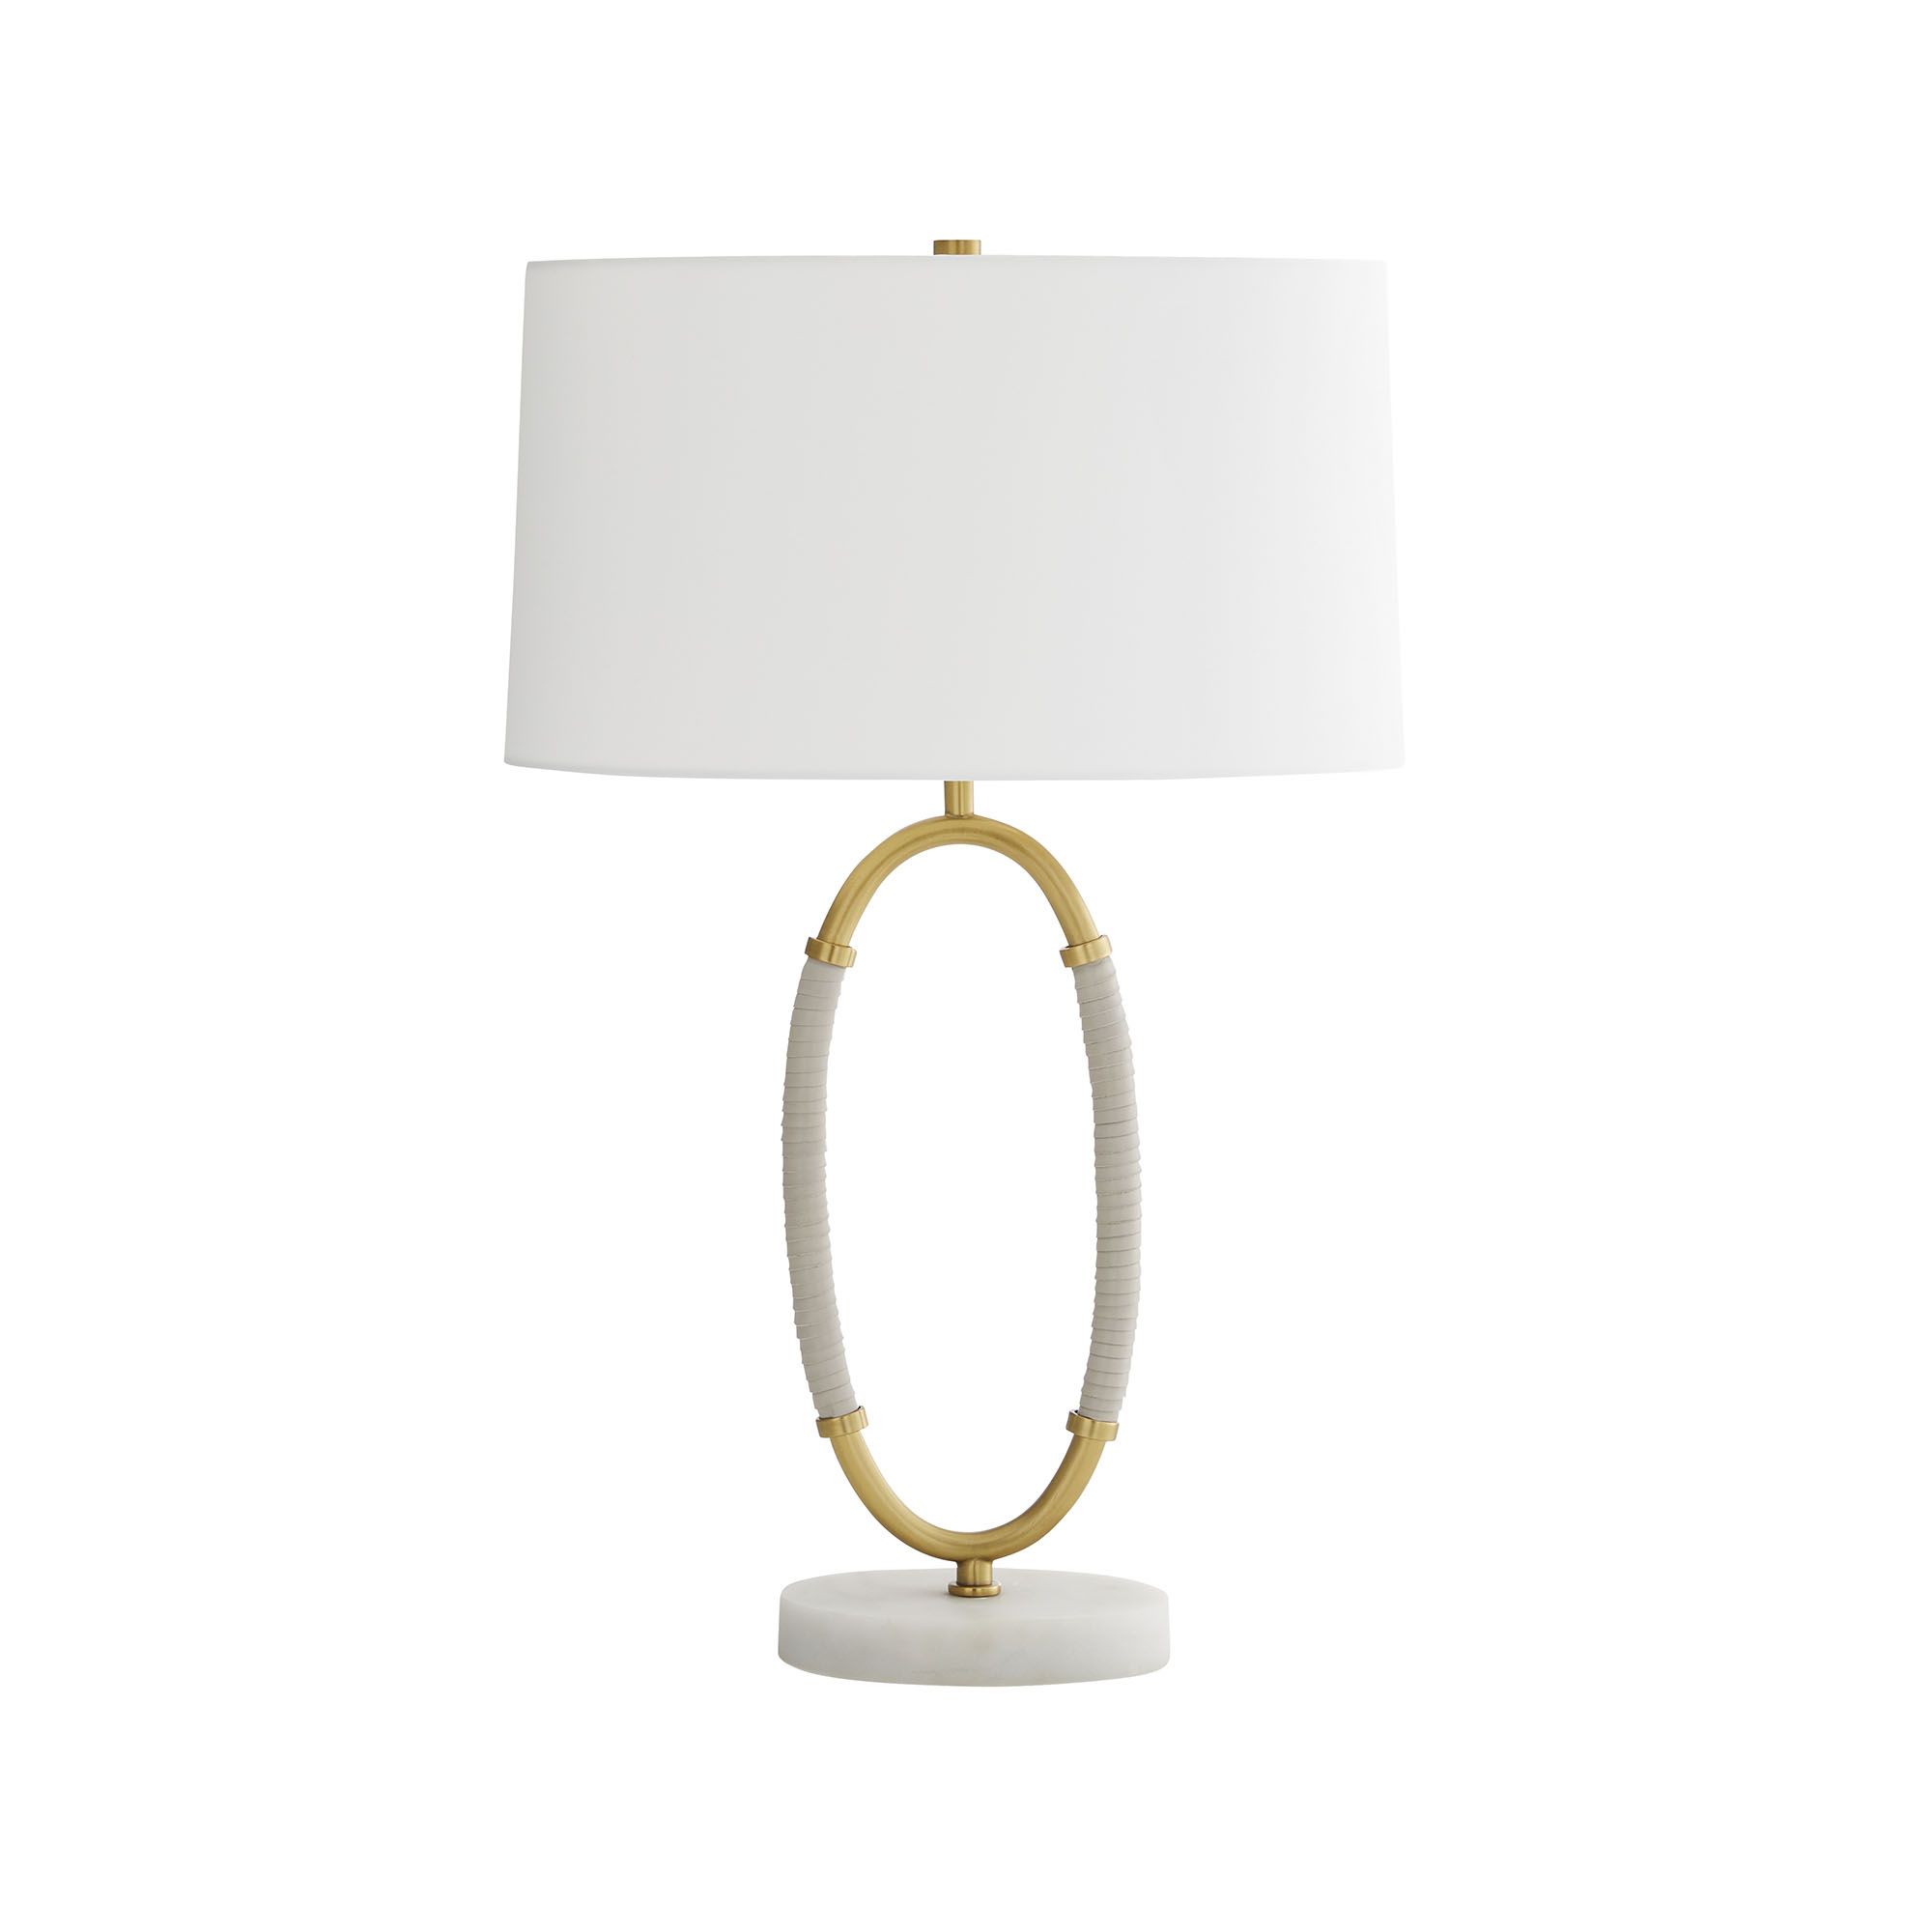 Купить Настольная лампа Landon Lamp в интернет-магазине roooms.ru